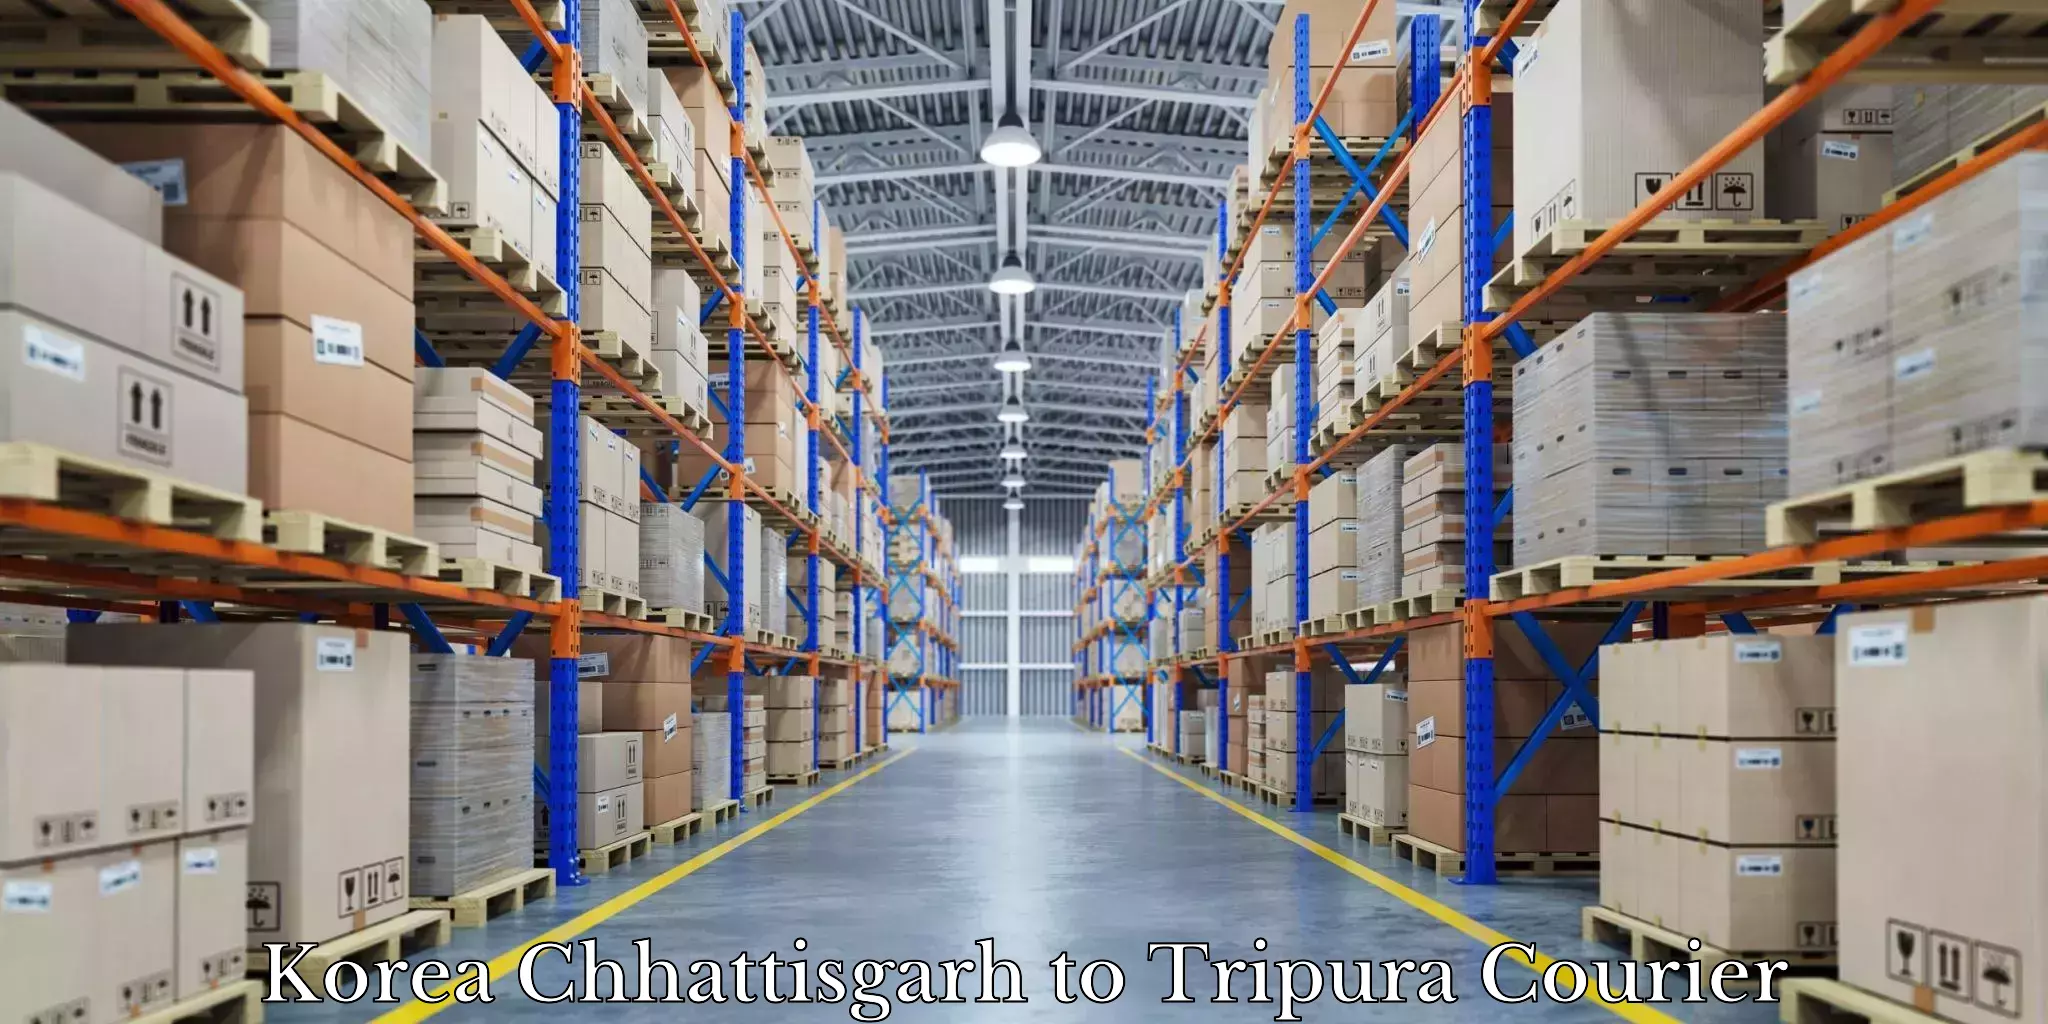 Furniture delivery service Korea Chhattisgarh to Tripura